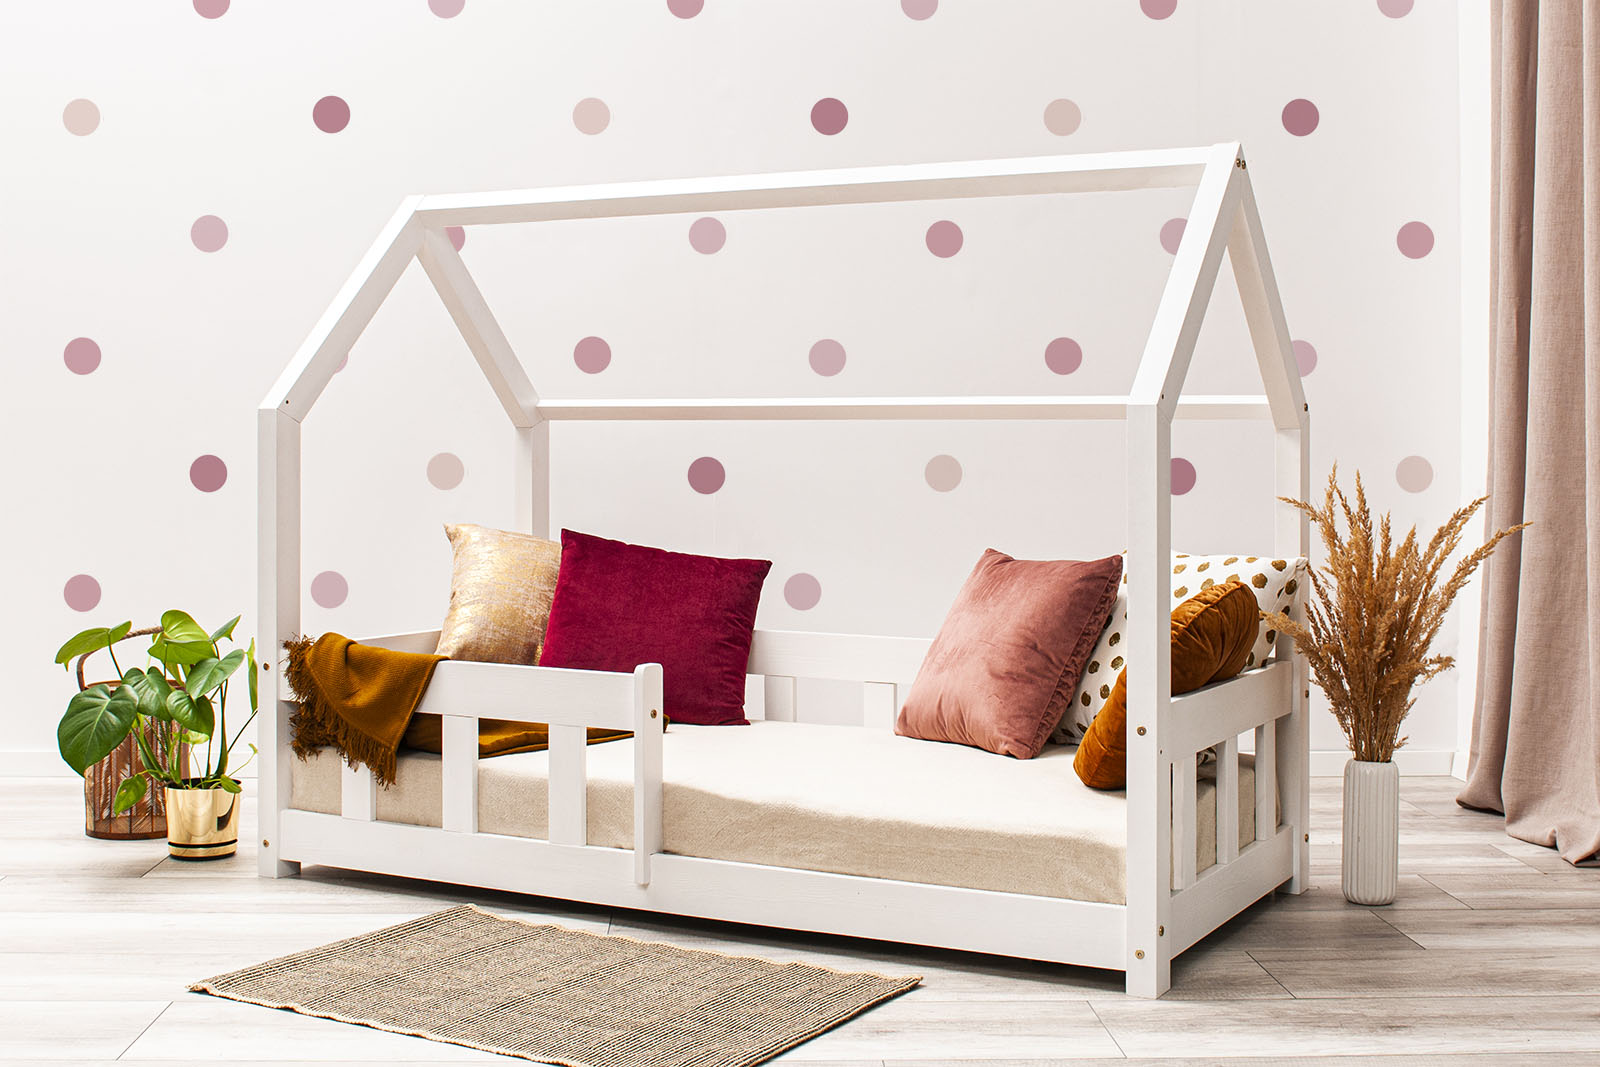 Wandsticker - Tupfen - Pink. Das Bett auf dem Foto ist 160x80cm groß.